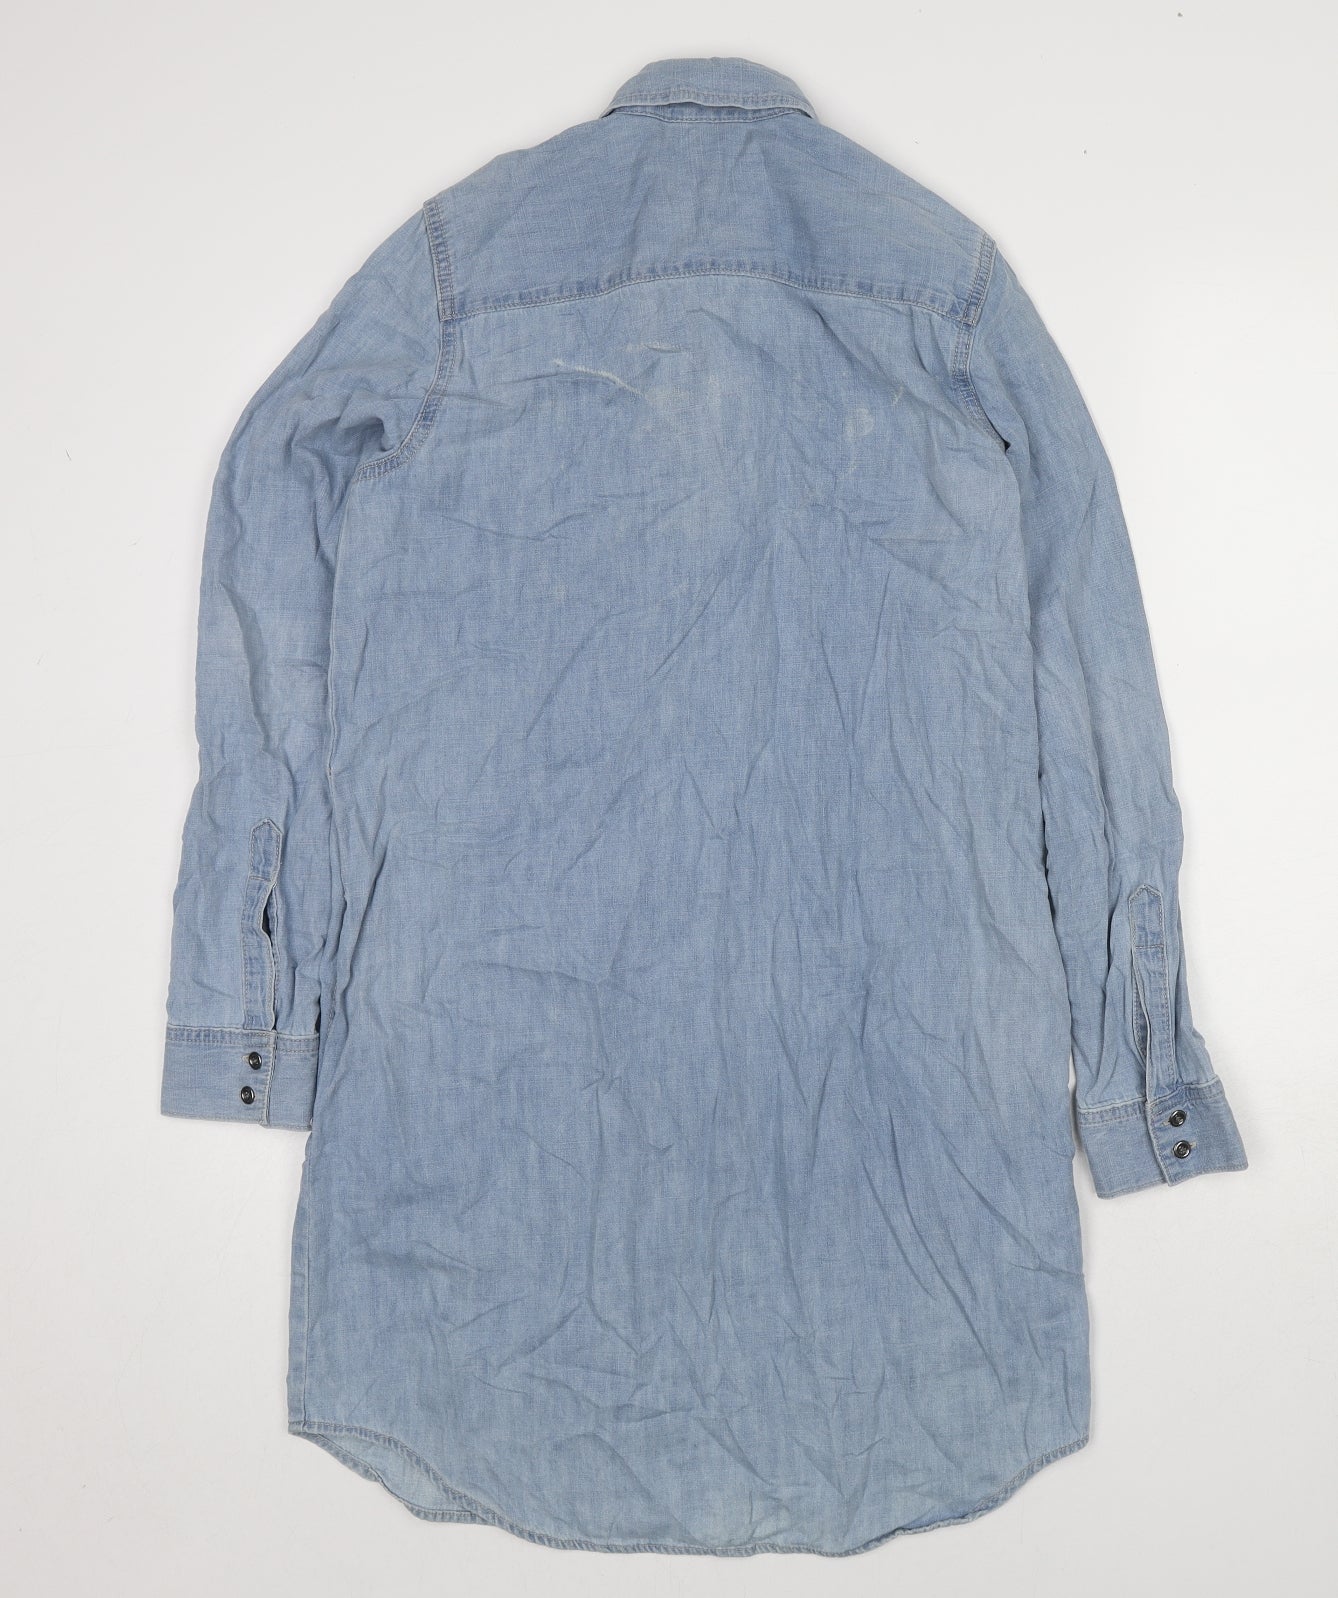 Gap Womens Blue Cotton Shirt Dress Size S Collared Zip